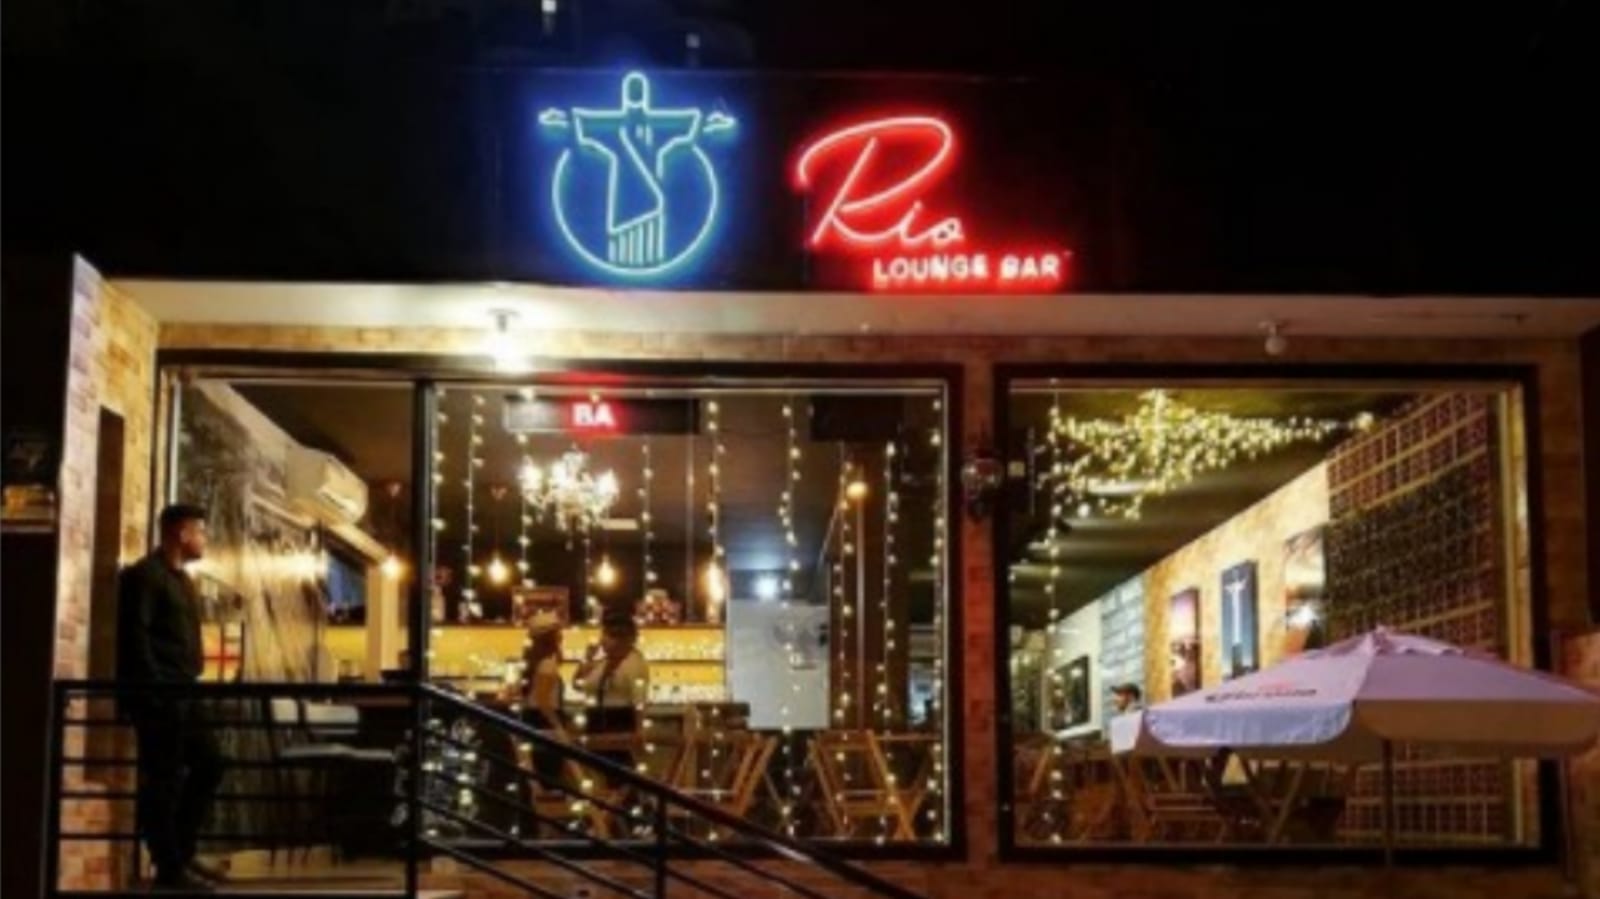 Rio Lounge Bar em Jundiaí